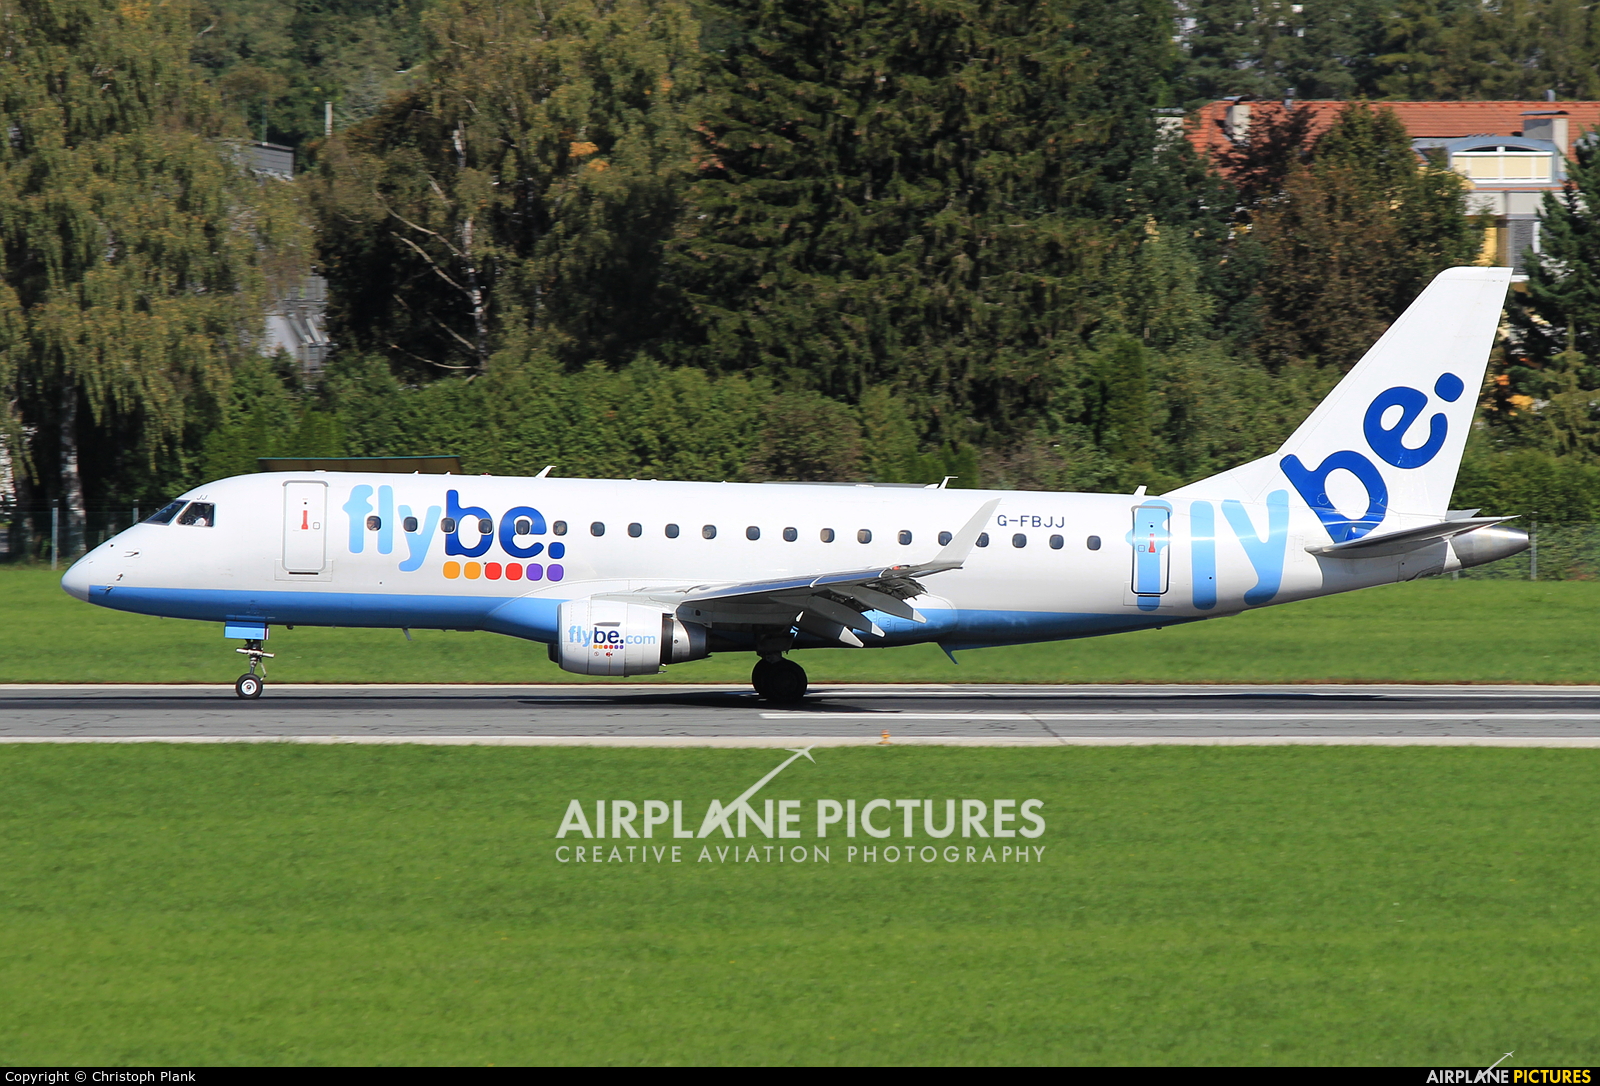 Flybe G-FBJJ aircraft at Innsbruck